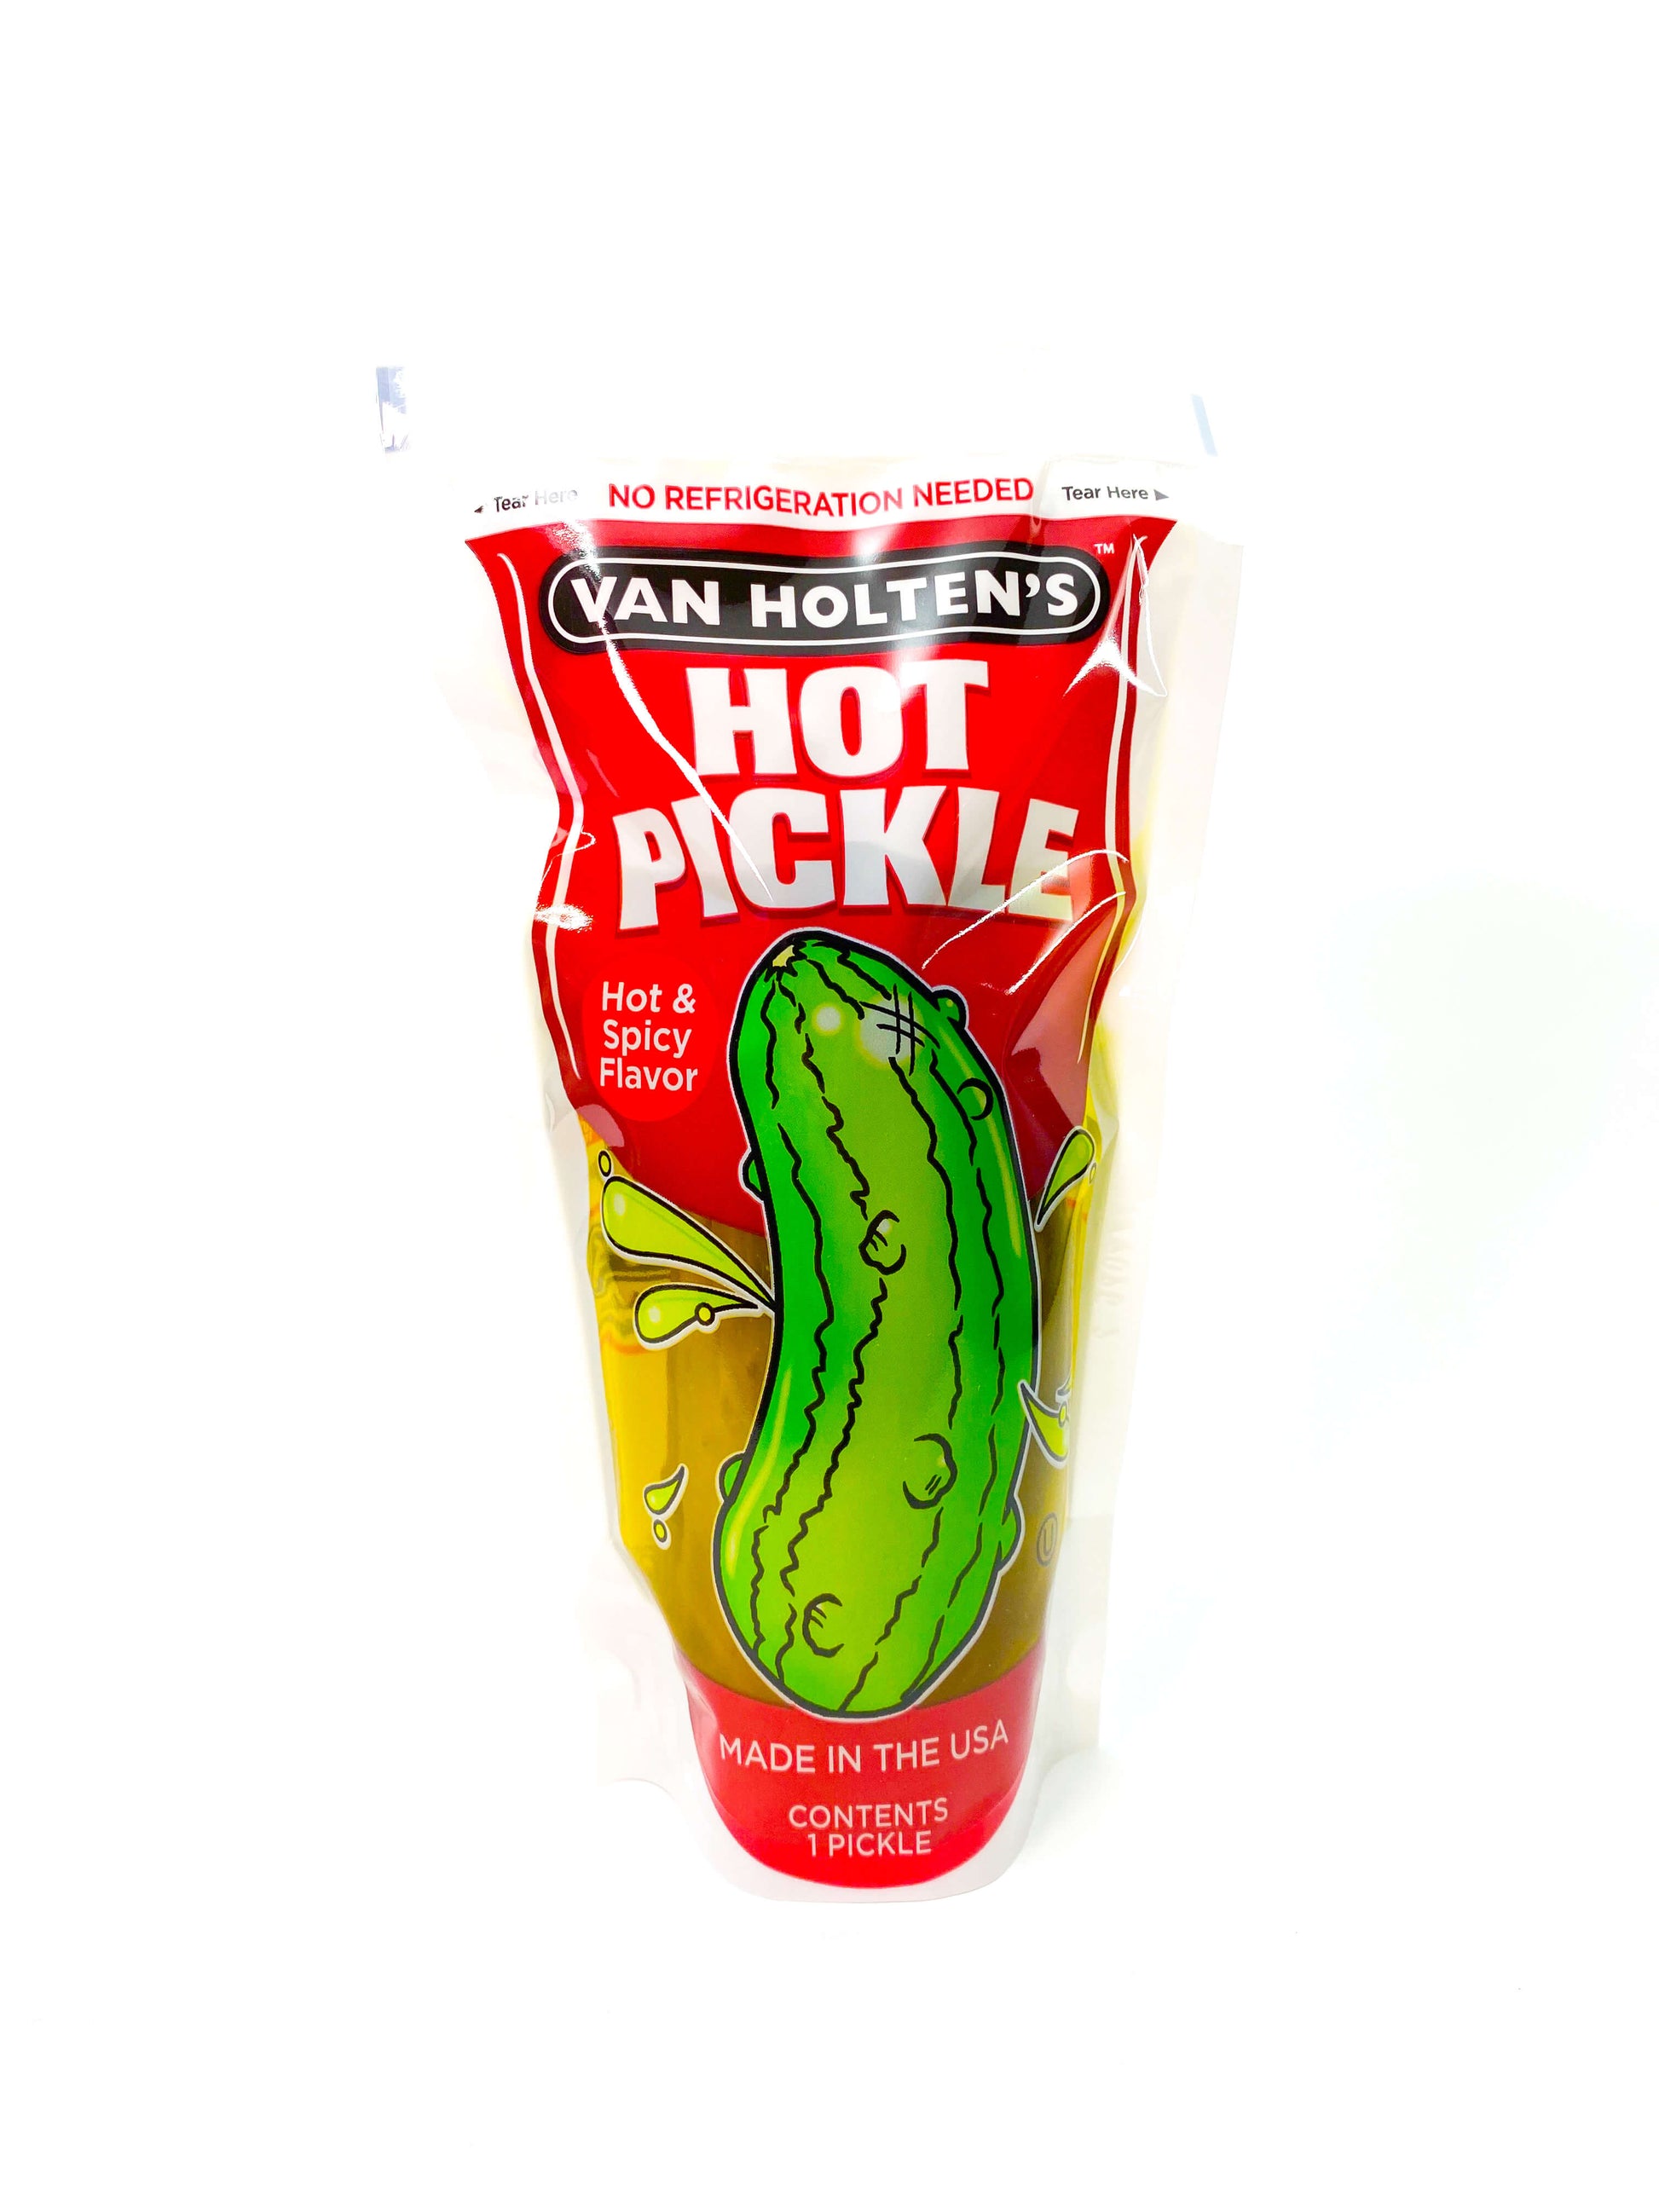 Produktbild der Van Holten's Hot Pickle